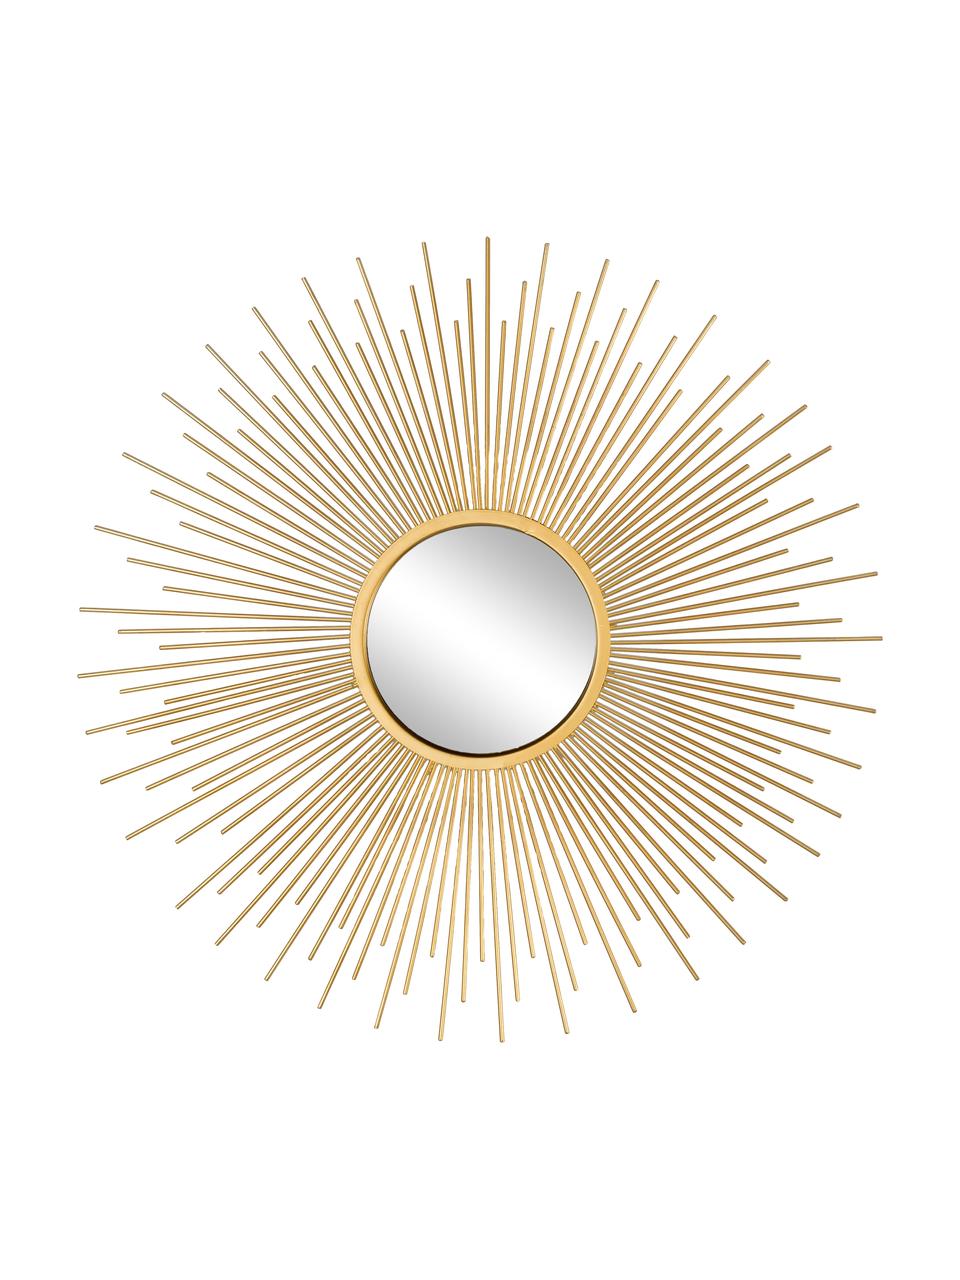 Dekospiegel-Set Sun, 3-tlg, Rahmen: Metall, beschichtet, Spiegelfläche: Spiegelglas, Goldfarben, Set mit verschiedenen Größen